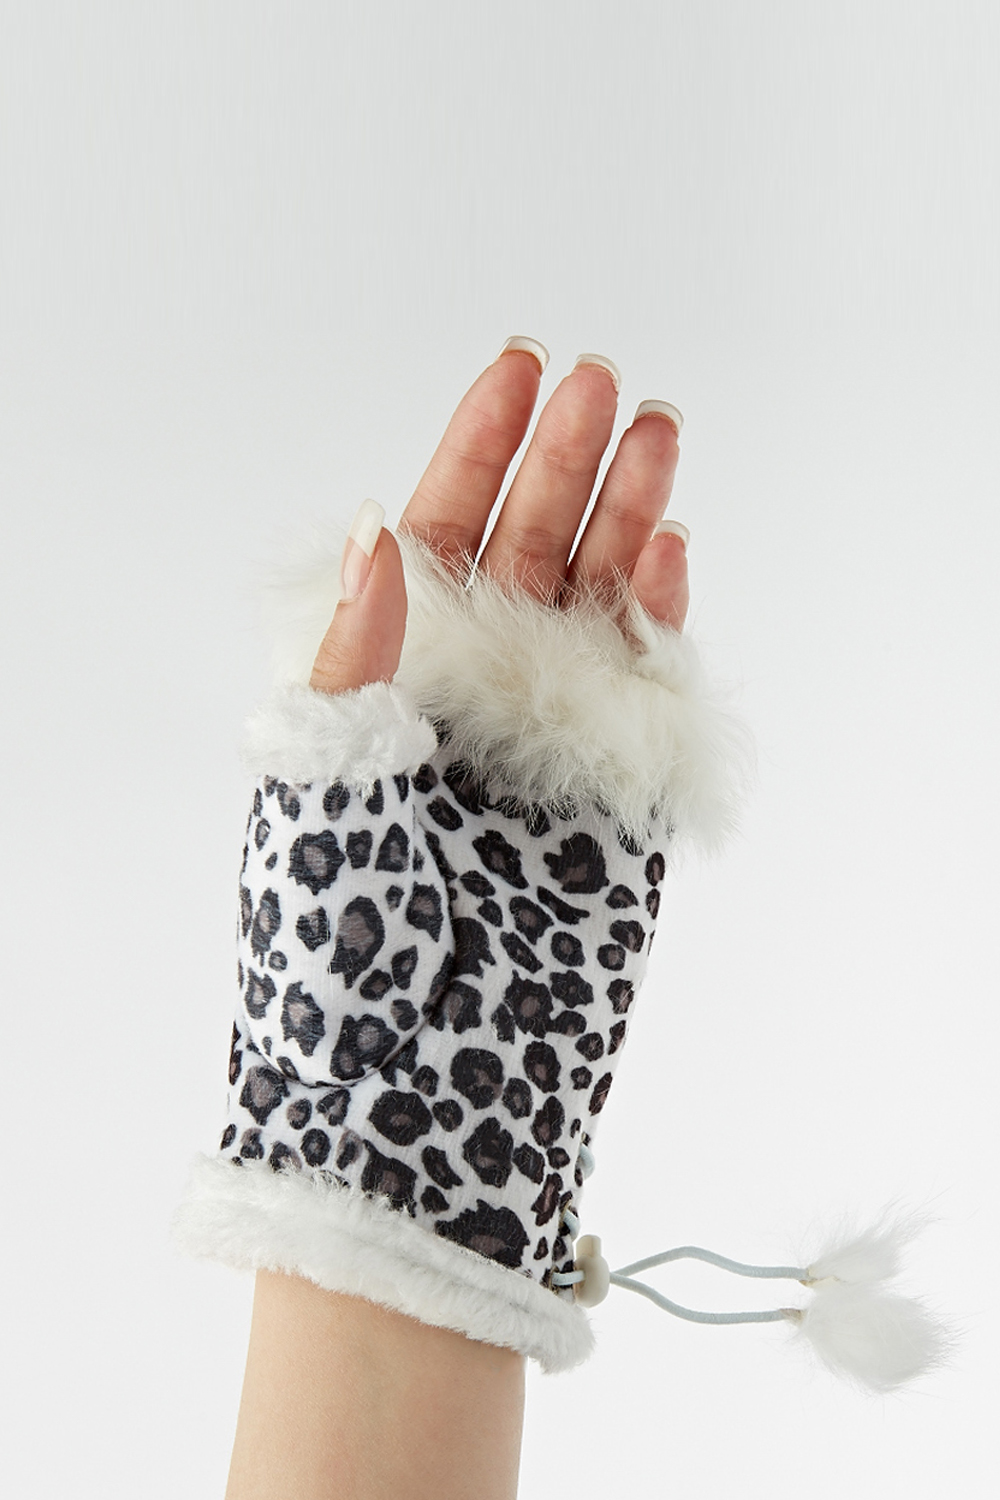 Animal Print Fingerless Gloves - Just $